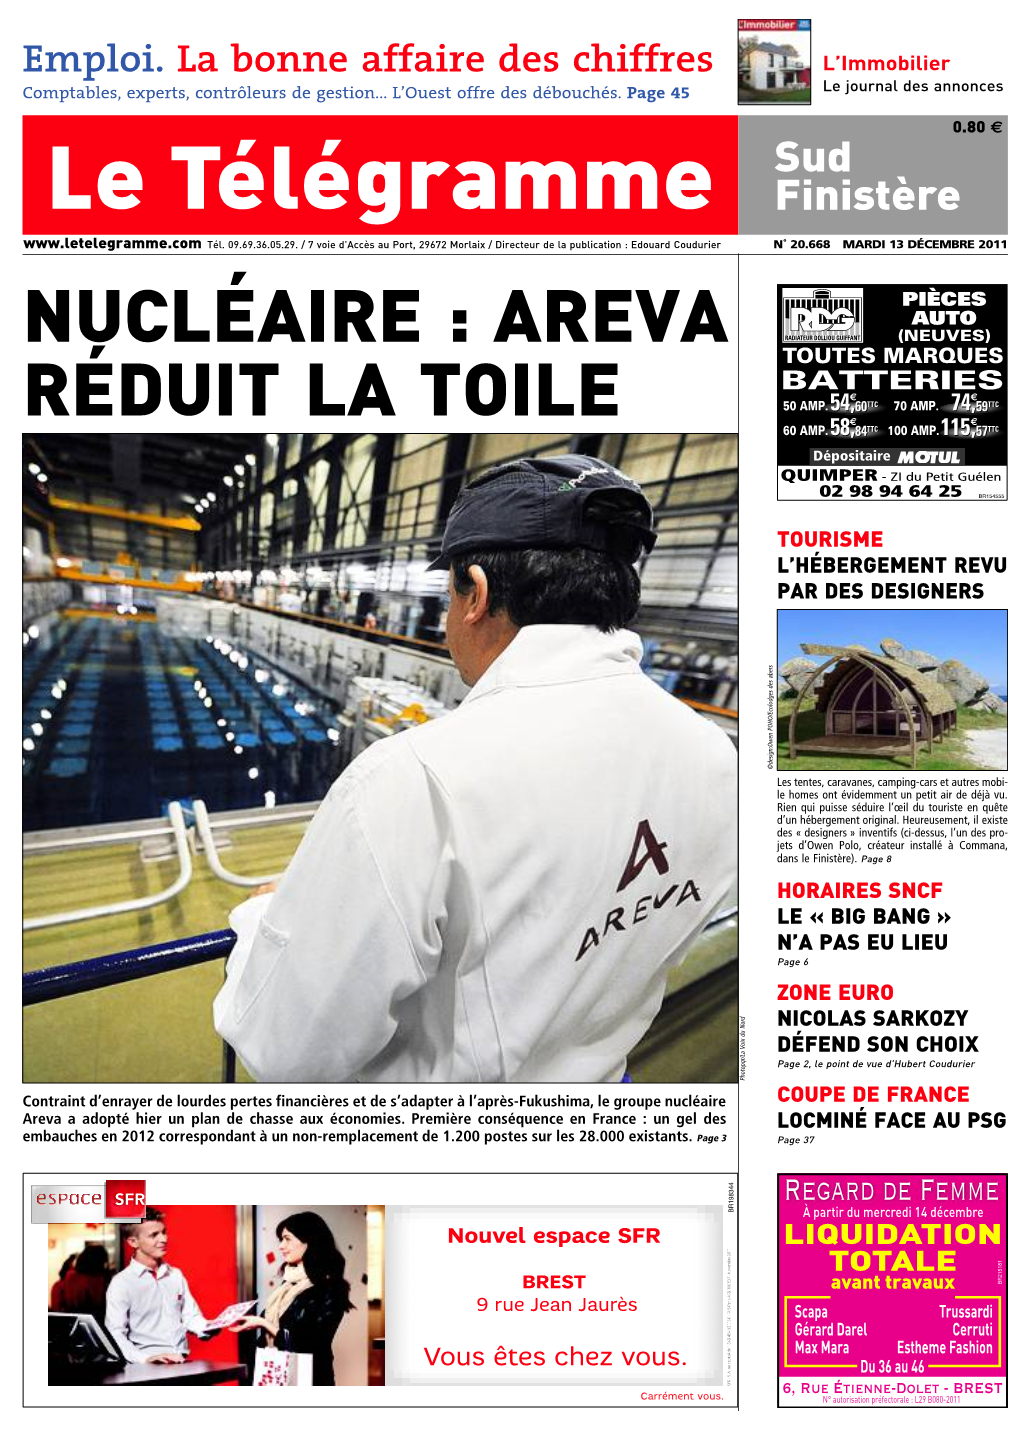 Nucléaire : Areva Radiateur Dolliou Guiffant (Neuves) Toutes Marques Batteries Réduit La Toile 50 Amp